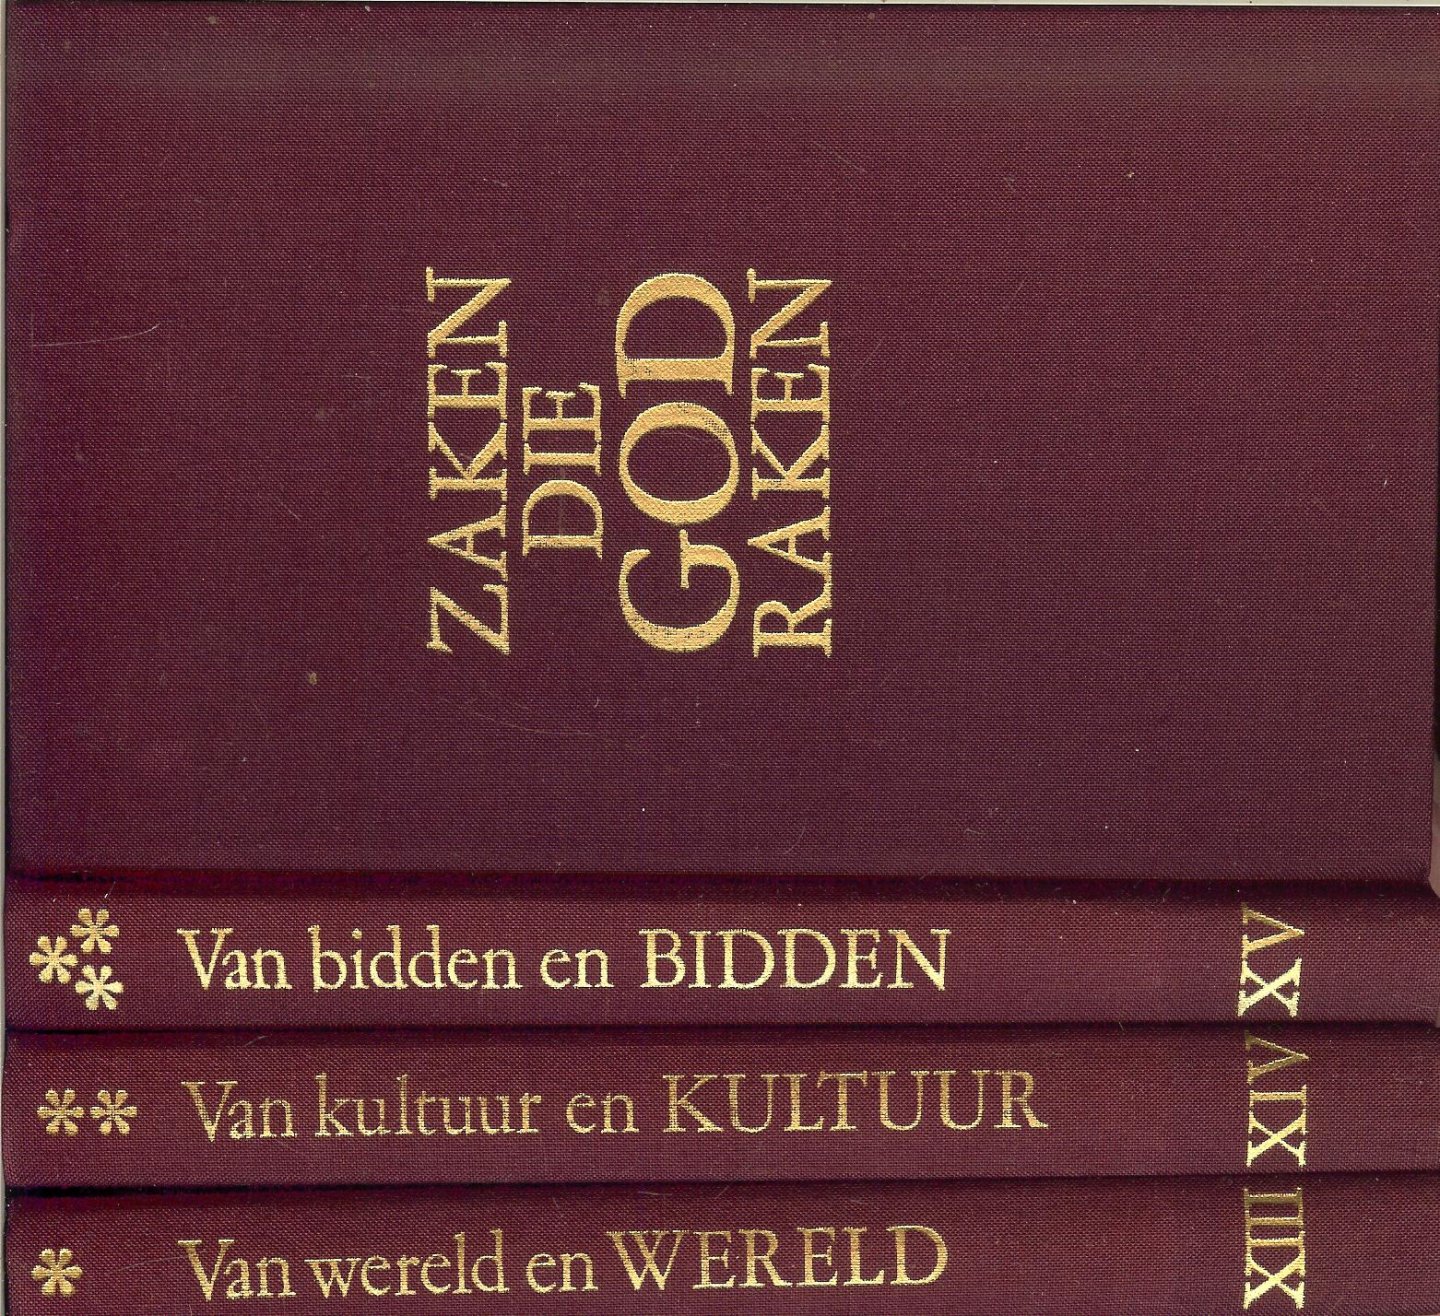 Hendriksen, T.G.A., bisschop - Zaken die god raken, van bidden en bidden. Van kultuur en kultuur, van wereld en wereld